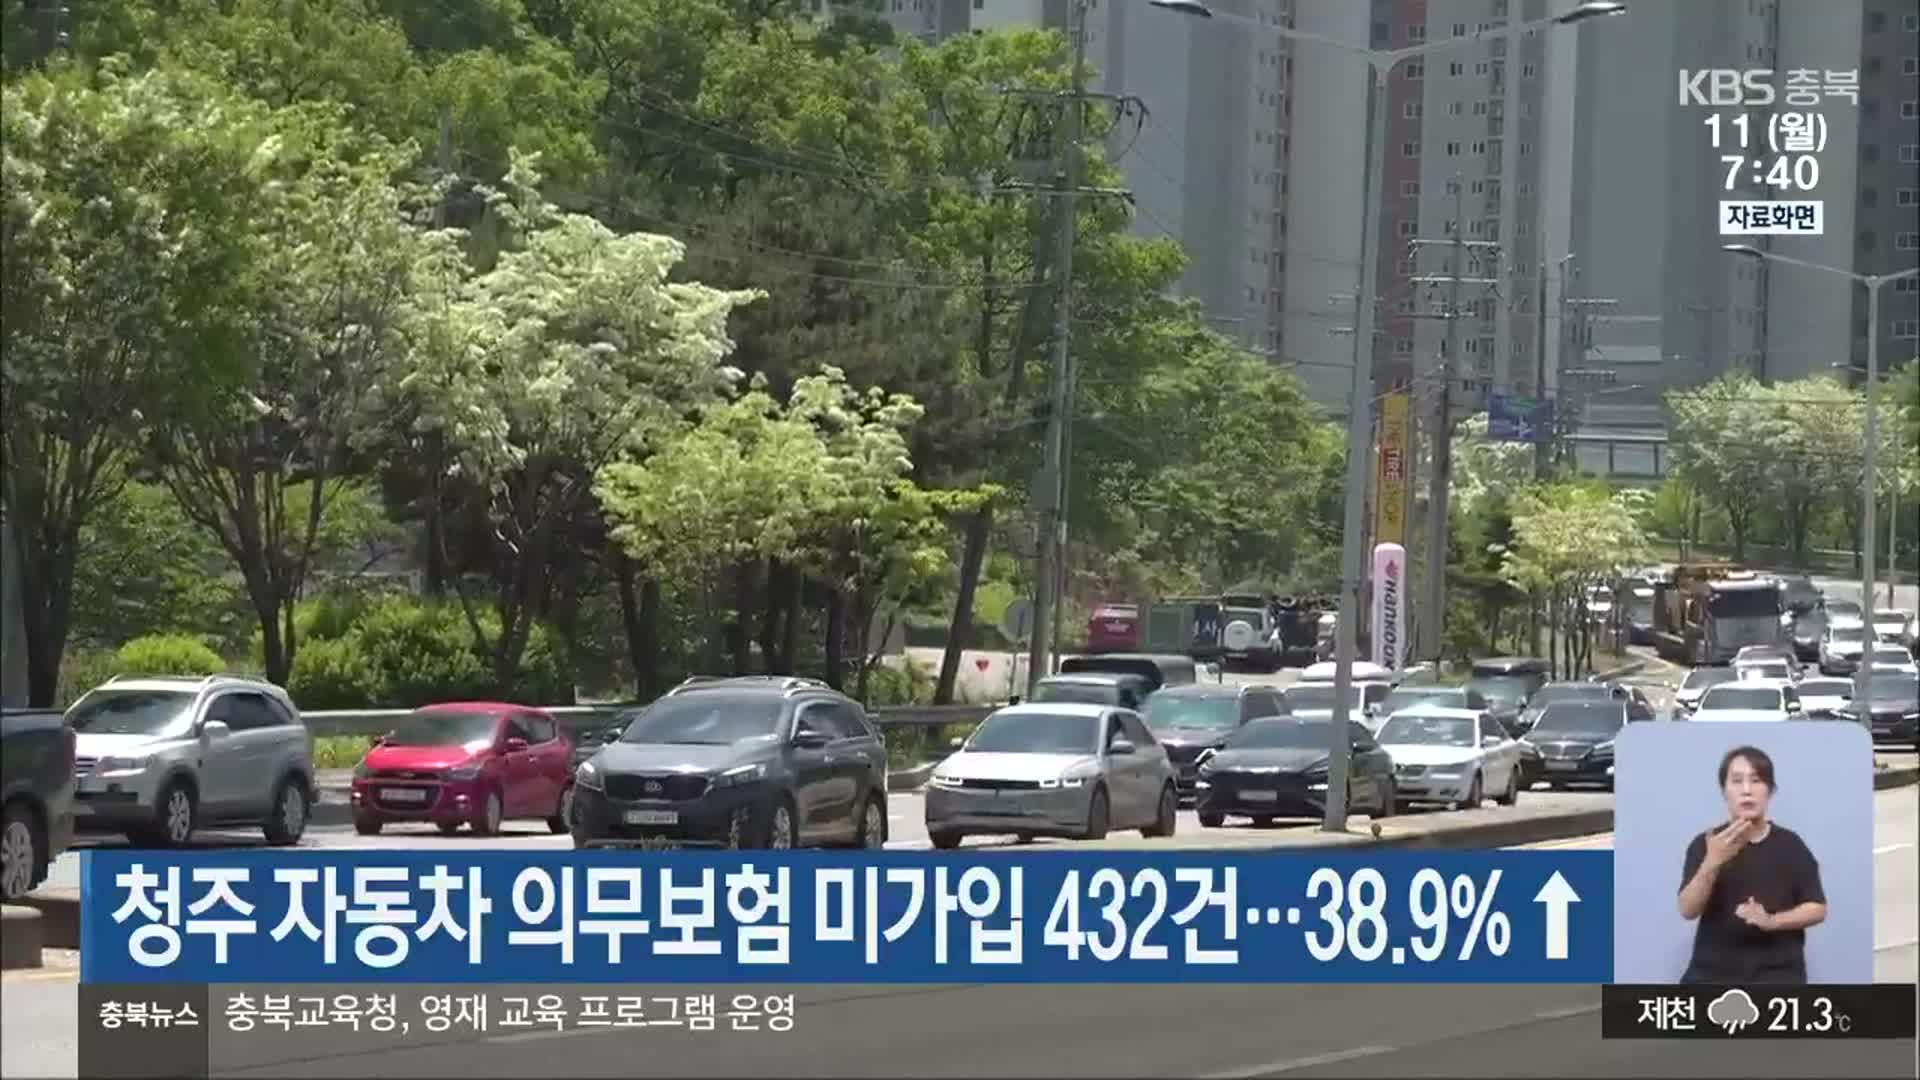 청주 자동차 의무보험 미가입 432건…38.9%↑